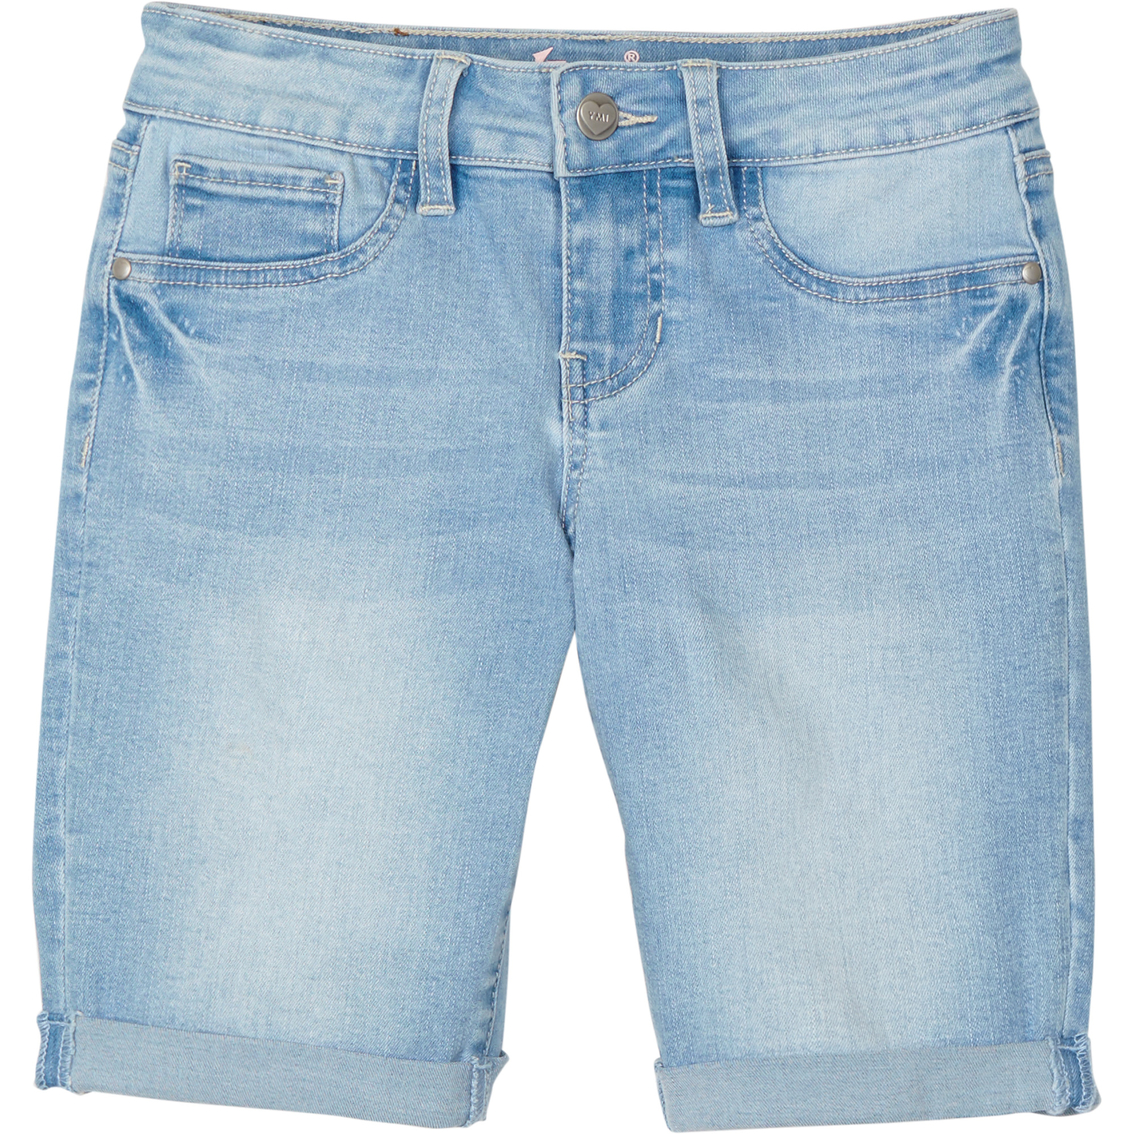 Ymi Jeans Girls Cuffed Denim Bermuda Shorts | Girls 7-16 | Clothing ...